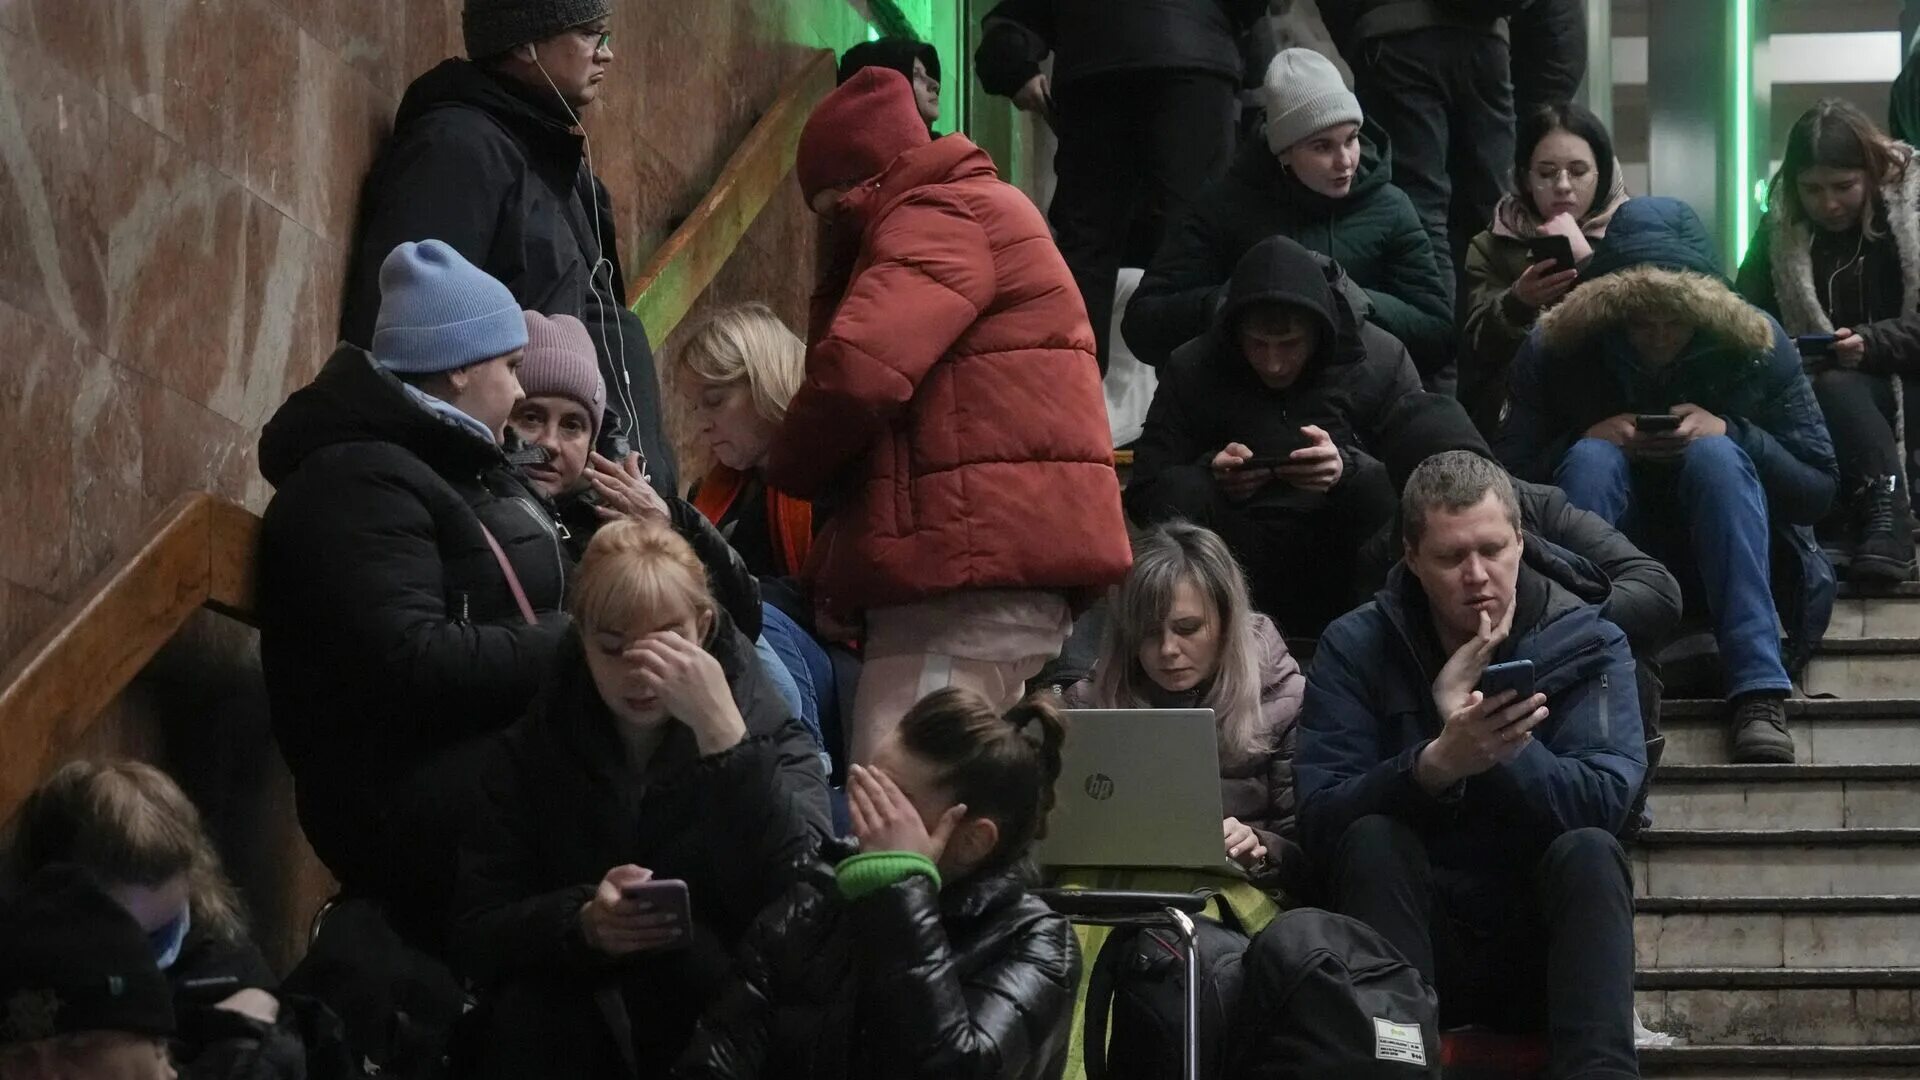 16 нападение. Киевское метро. В Киеве объявили воздушную тревогу. Тревога в Украине сейчас. Взрывы в Киеве сегодня 29 декабря.